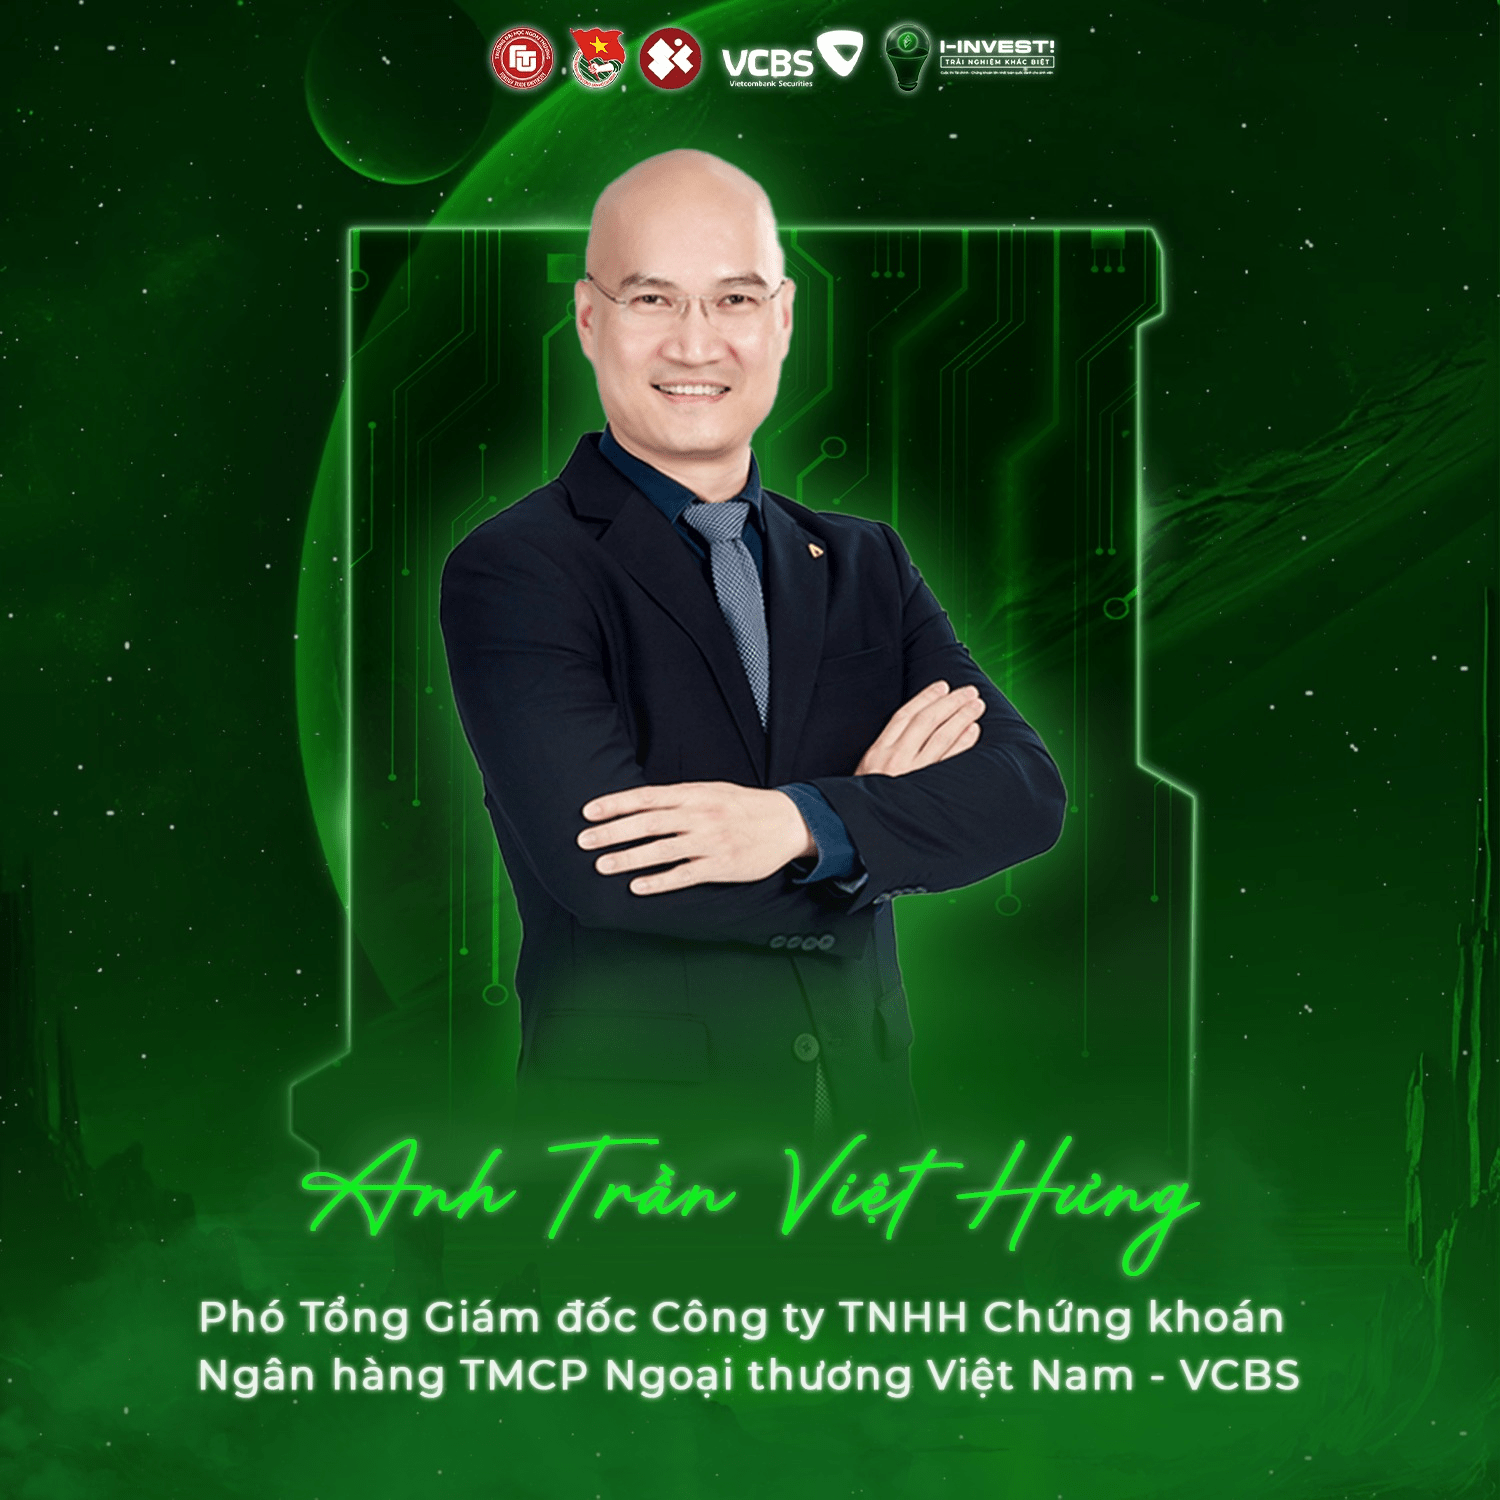 Anh Trần Việt Hưng - Phó Tổng Giám đốc Công ty TNHH Chứng khoán Ngân hàng TMCP Ngoại thương Việt Nam - VCBS